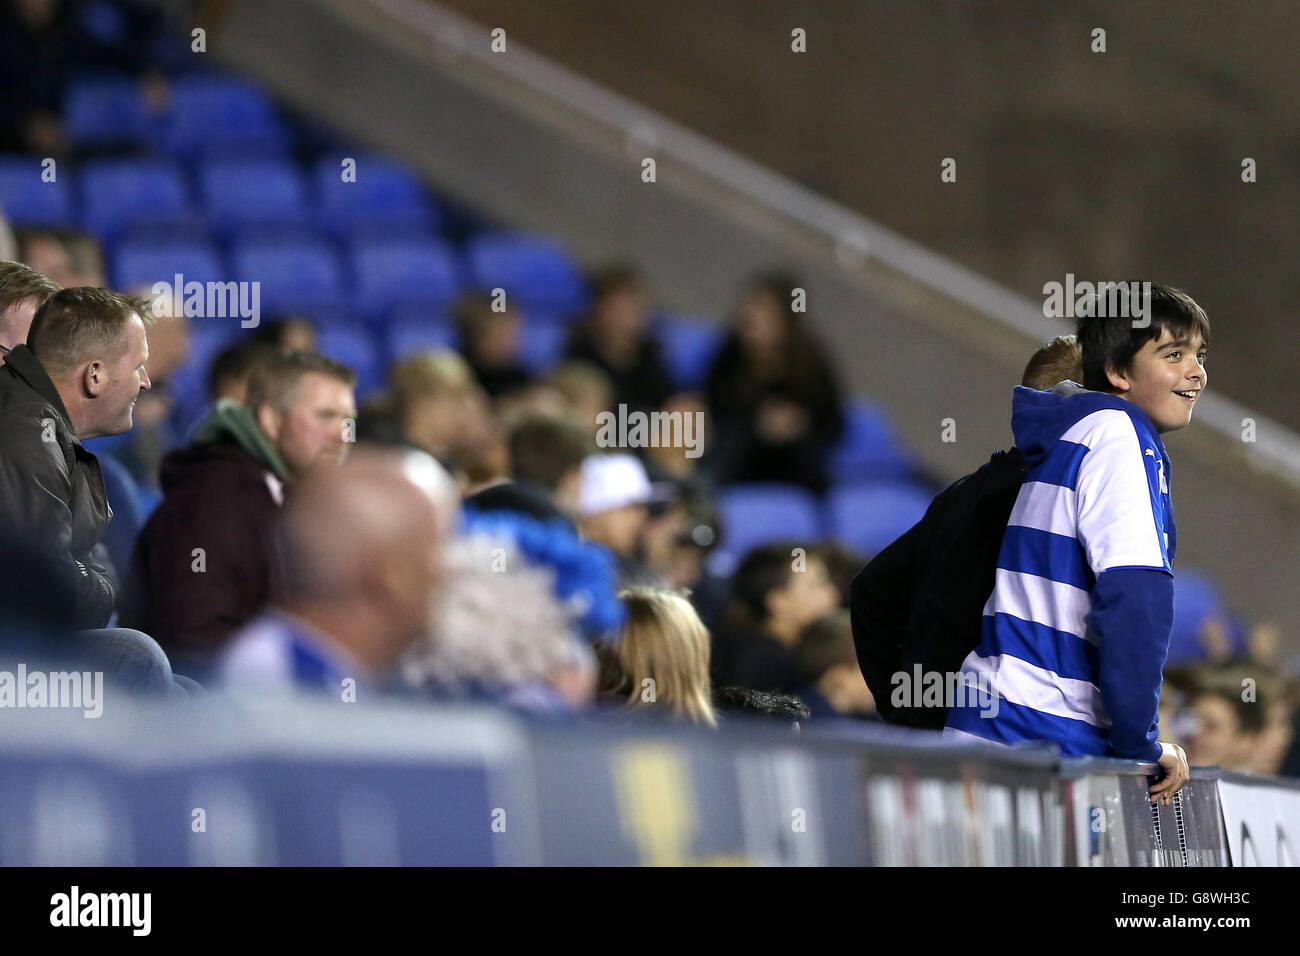 Reading v Hull City - Campionato Sky Bet - Stadio Madejski. Un giovane sostenitore della lettura si distingue nella folla Foto Stock